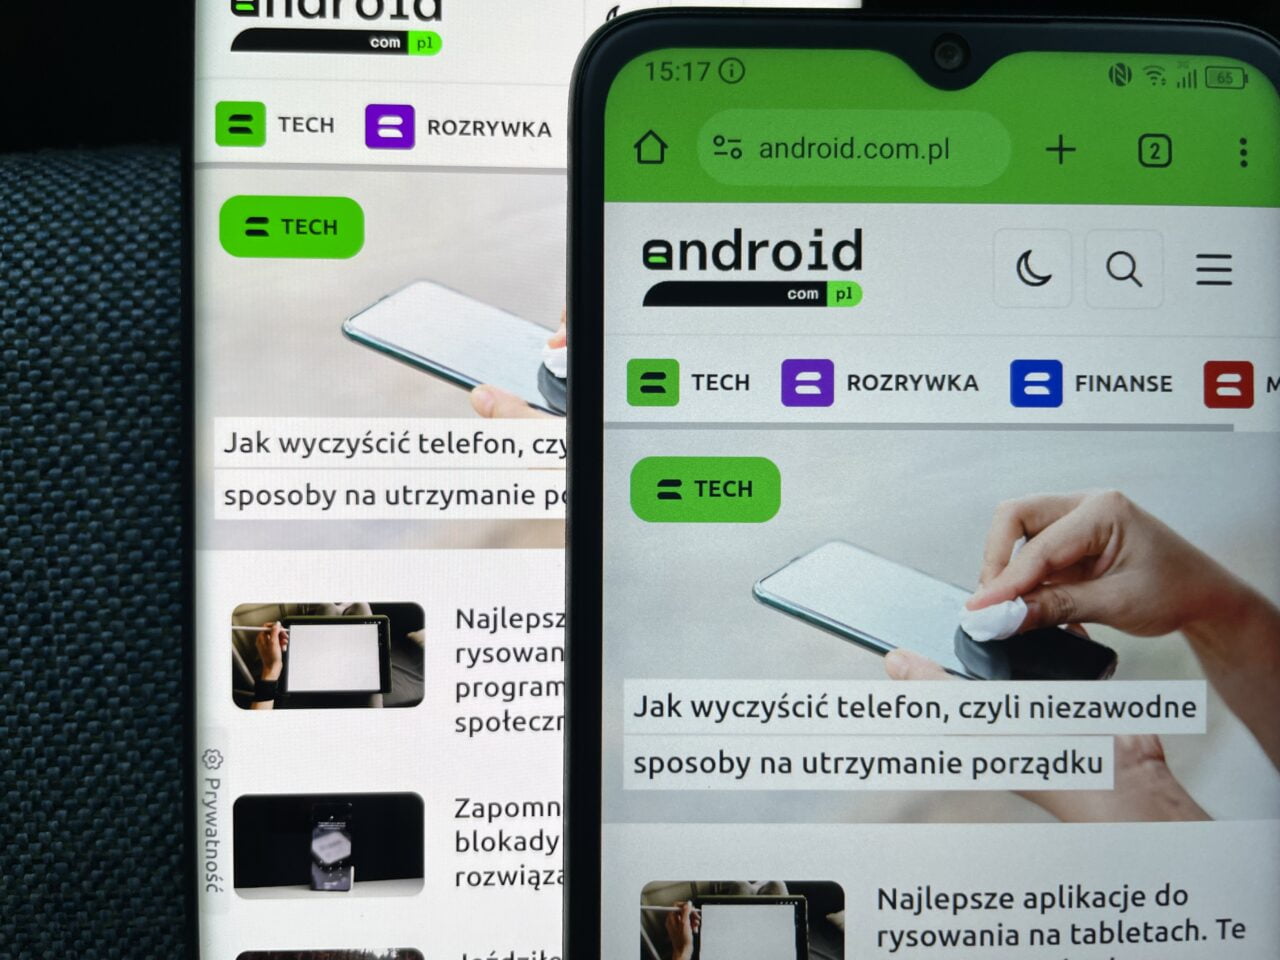 Ekran smartfona wyświetlający artykuł o czyszczeniu telefonu na stronie internetowej z kategoriami takimi jak TECH, ROZRYWKA, FINANSE, na tle drugiego smartfona z tym samym obrazem.